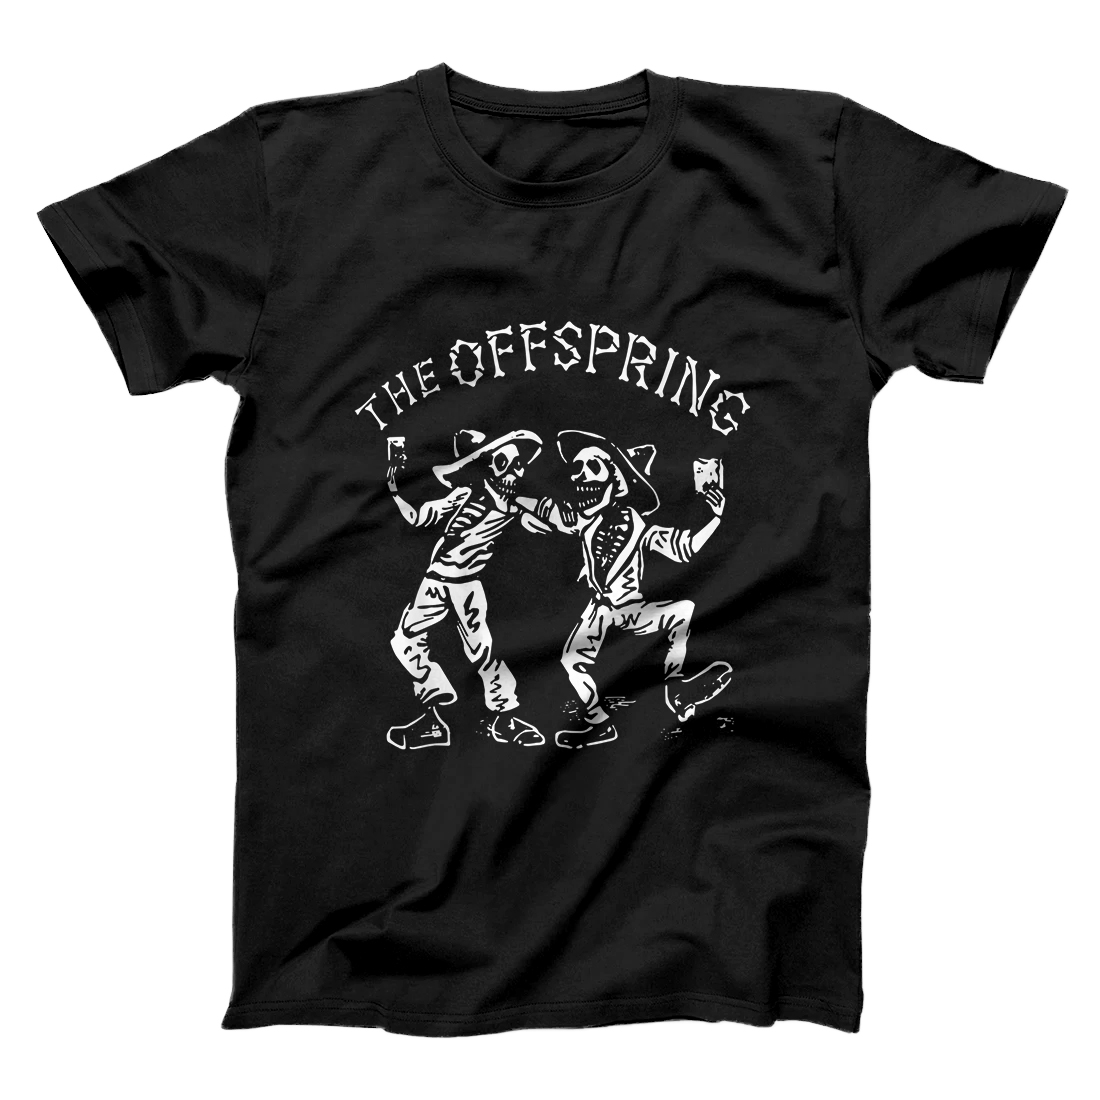 The Offspring Dance FKR Dance Tee T-Shirt - All Star Shirt